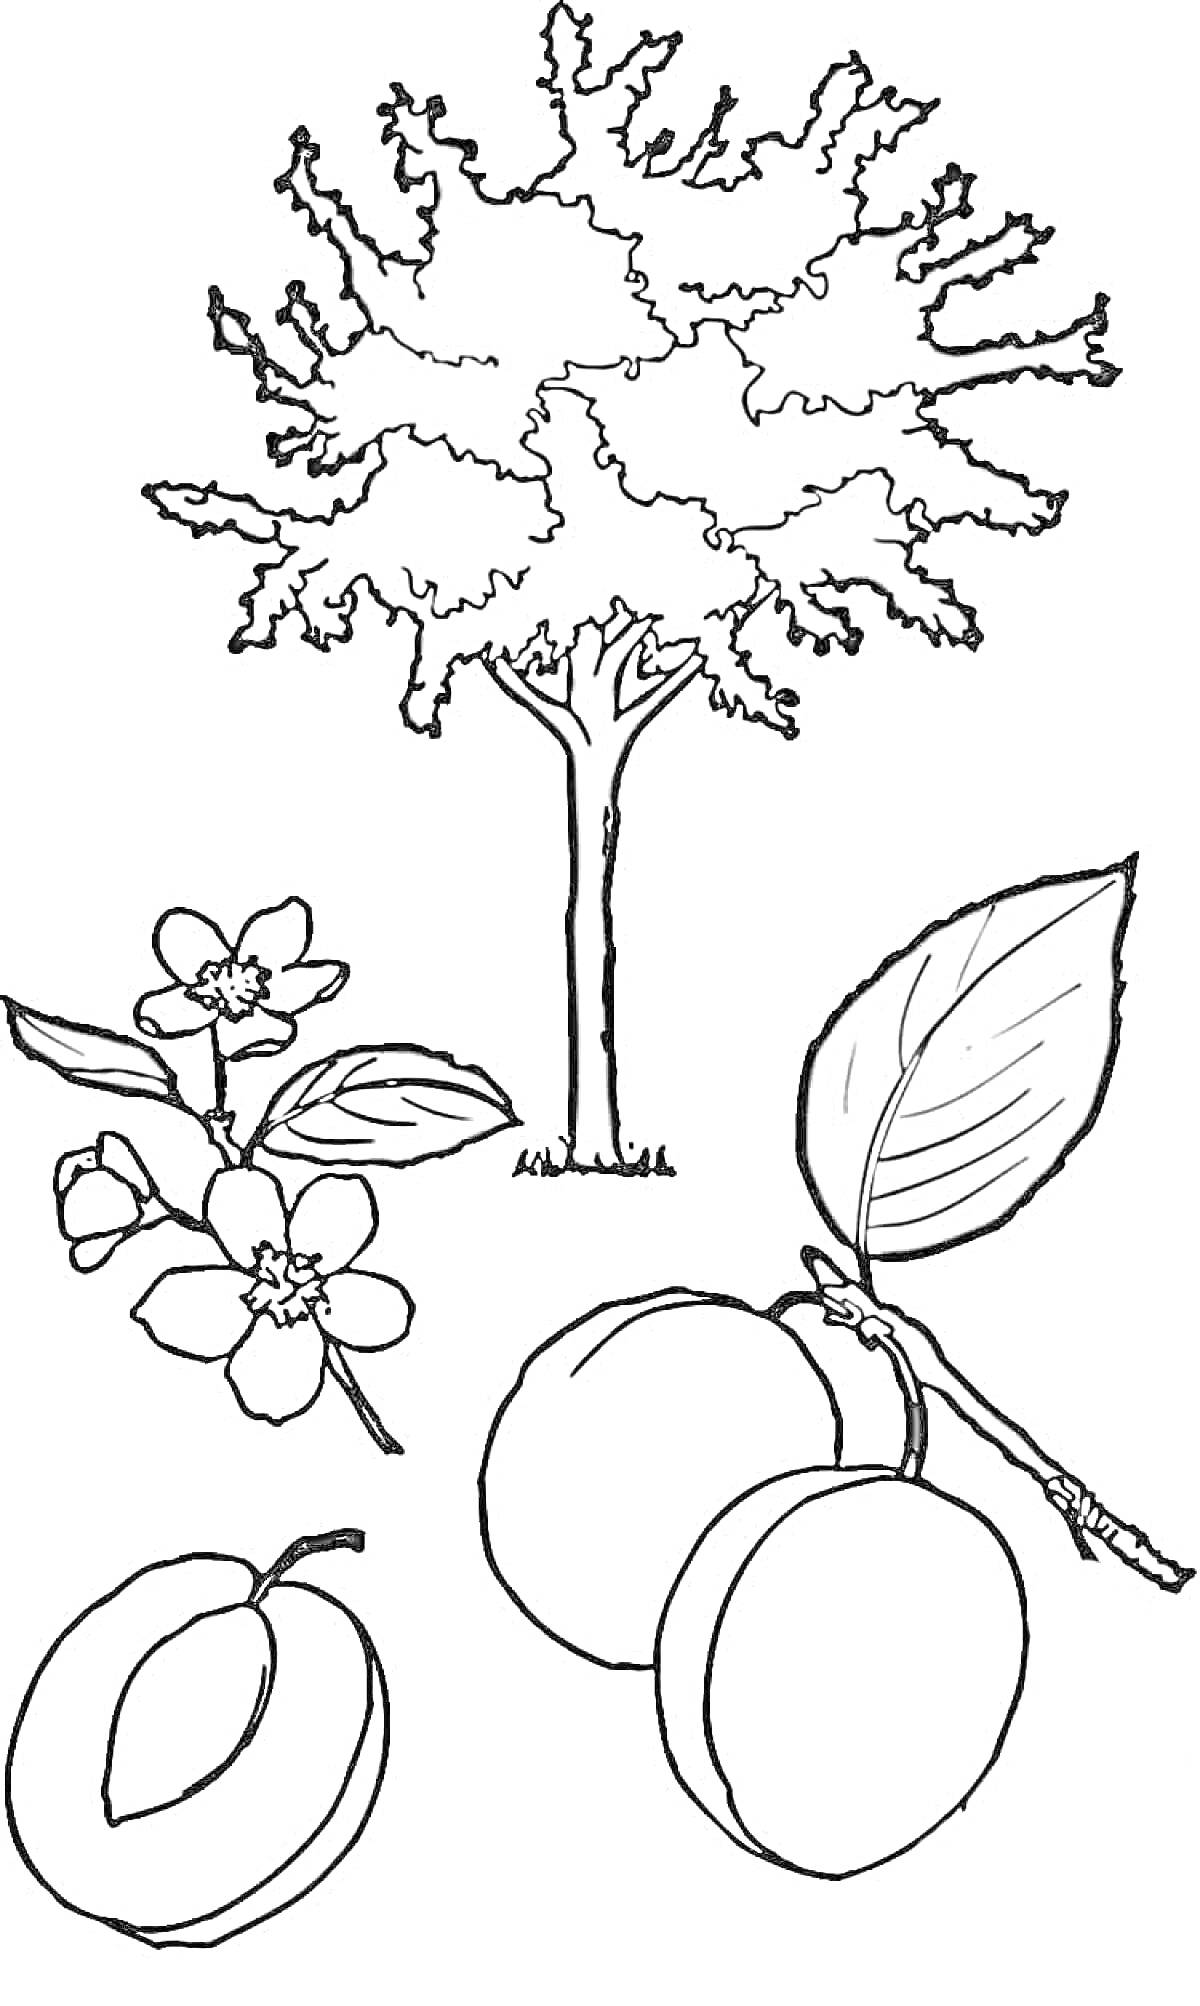 Абрикос (дерево, цветы, плоды)